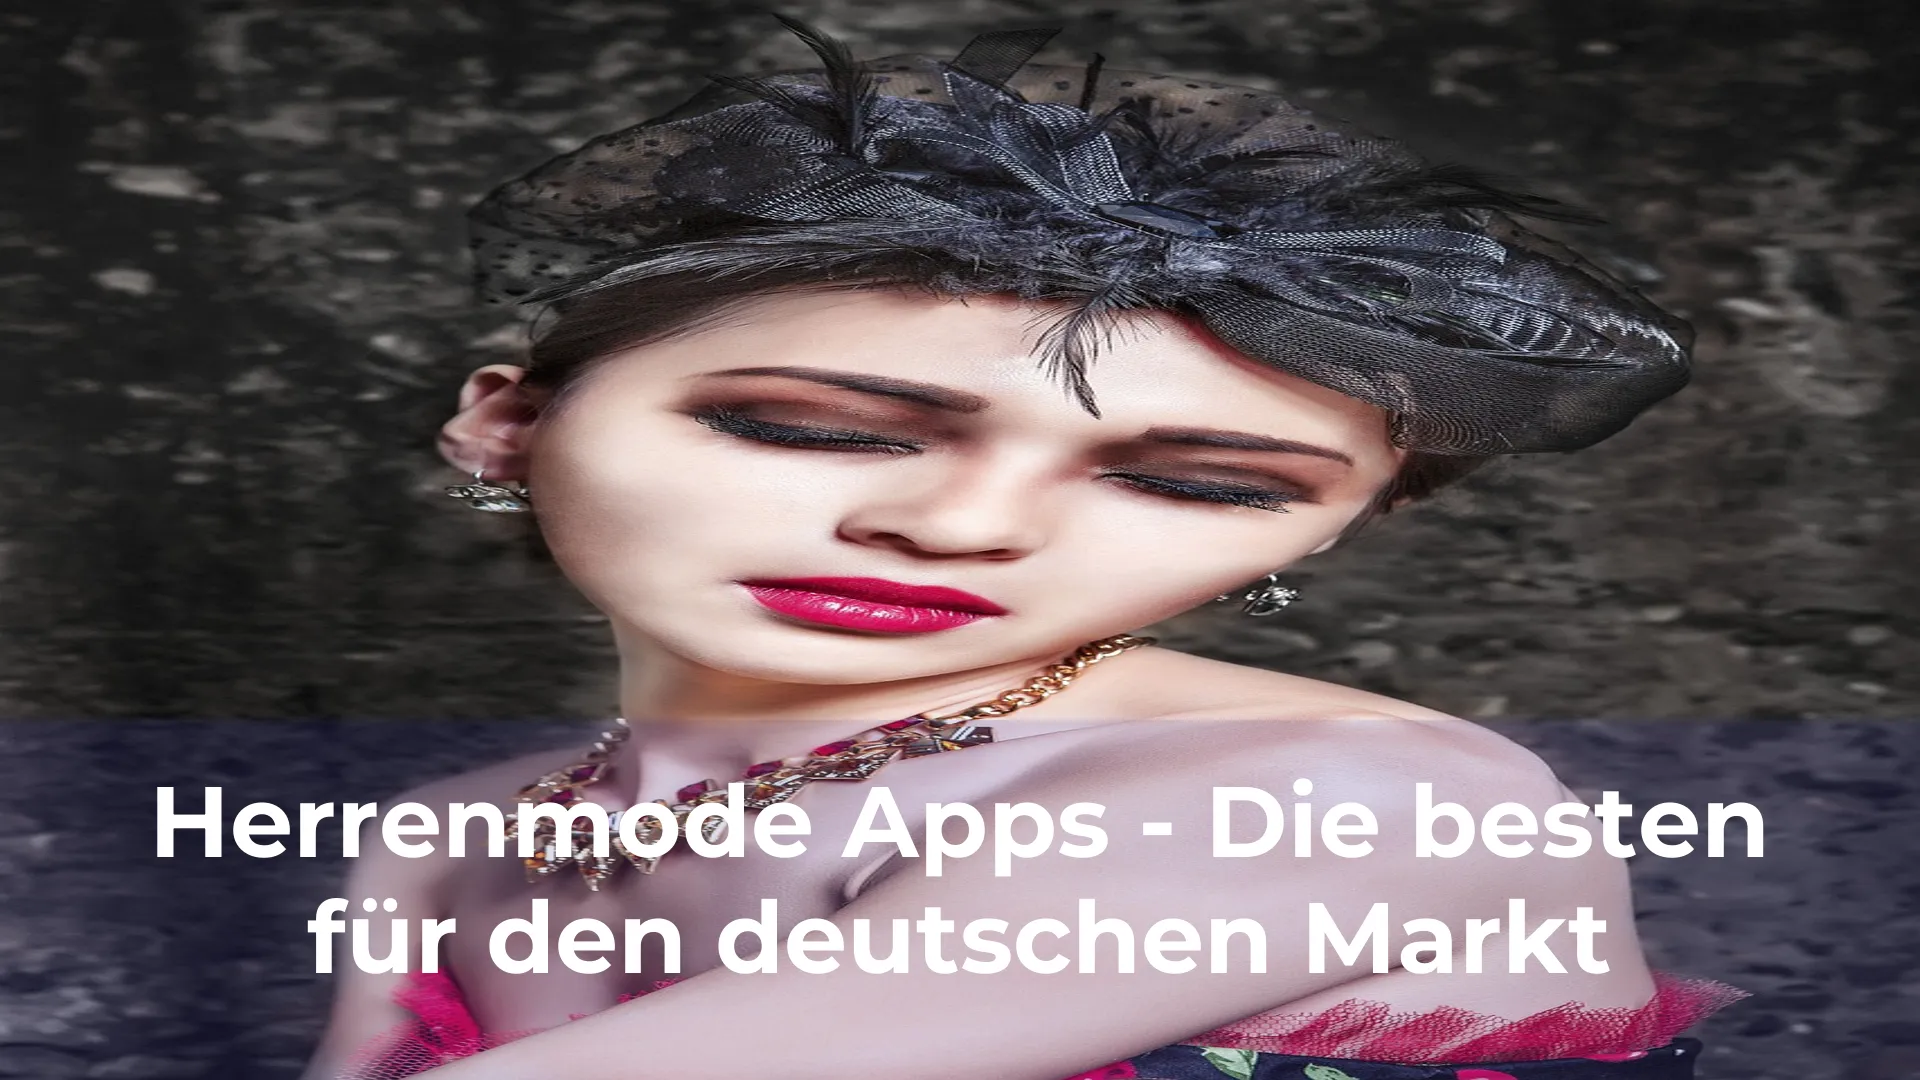 Herrenmode apps die besten für den deutschen markt